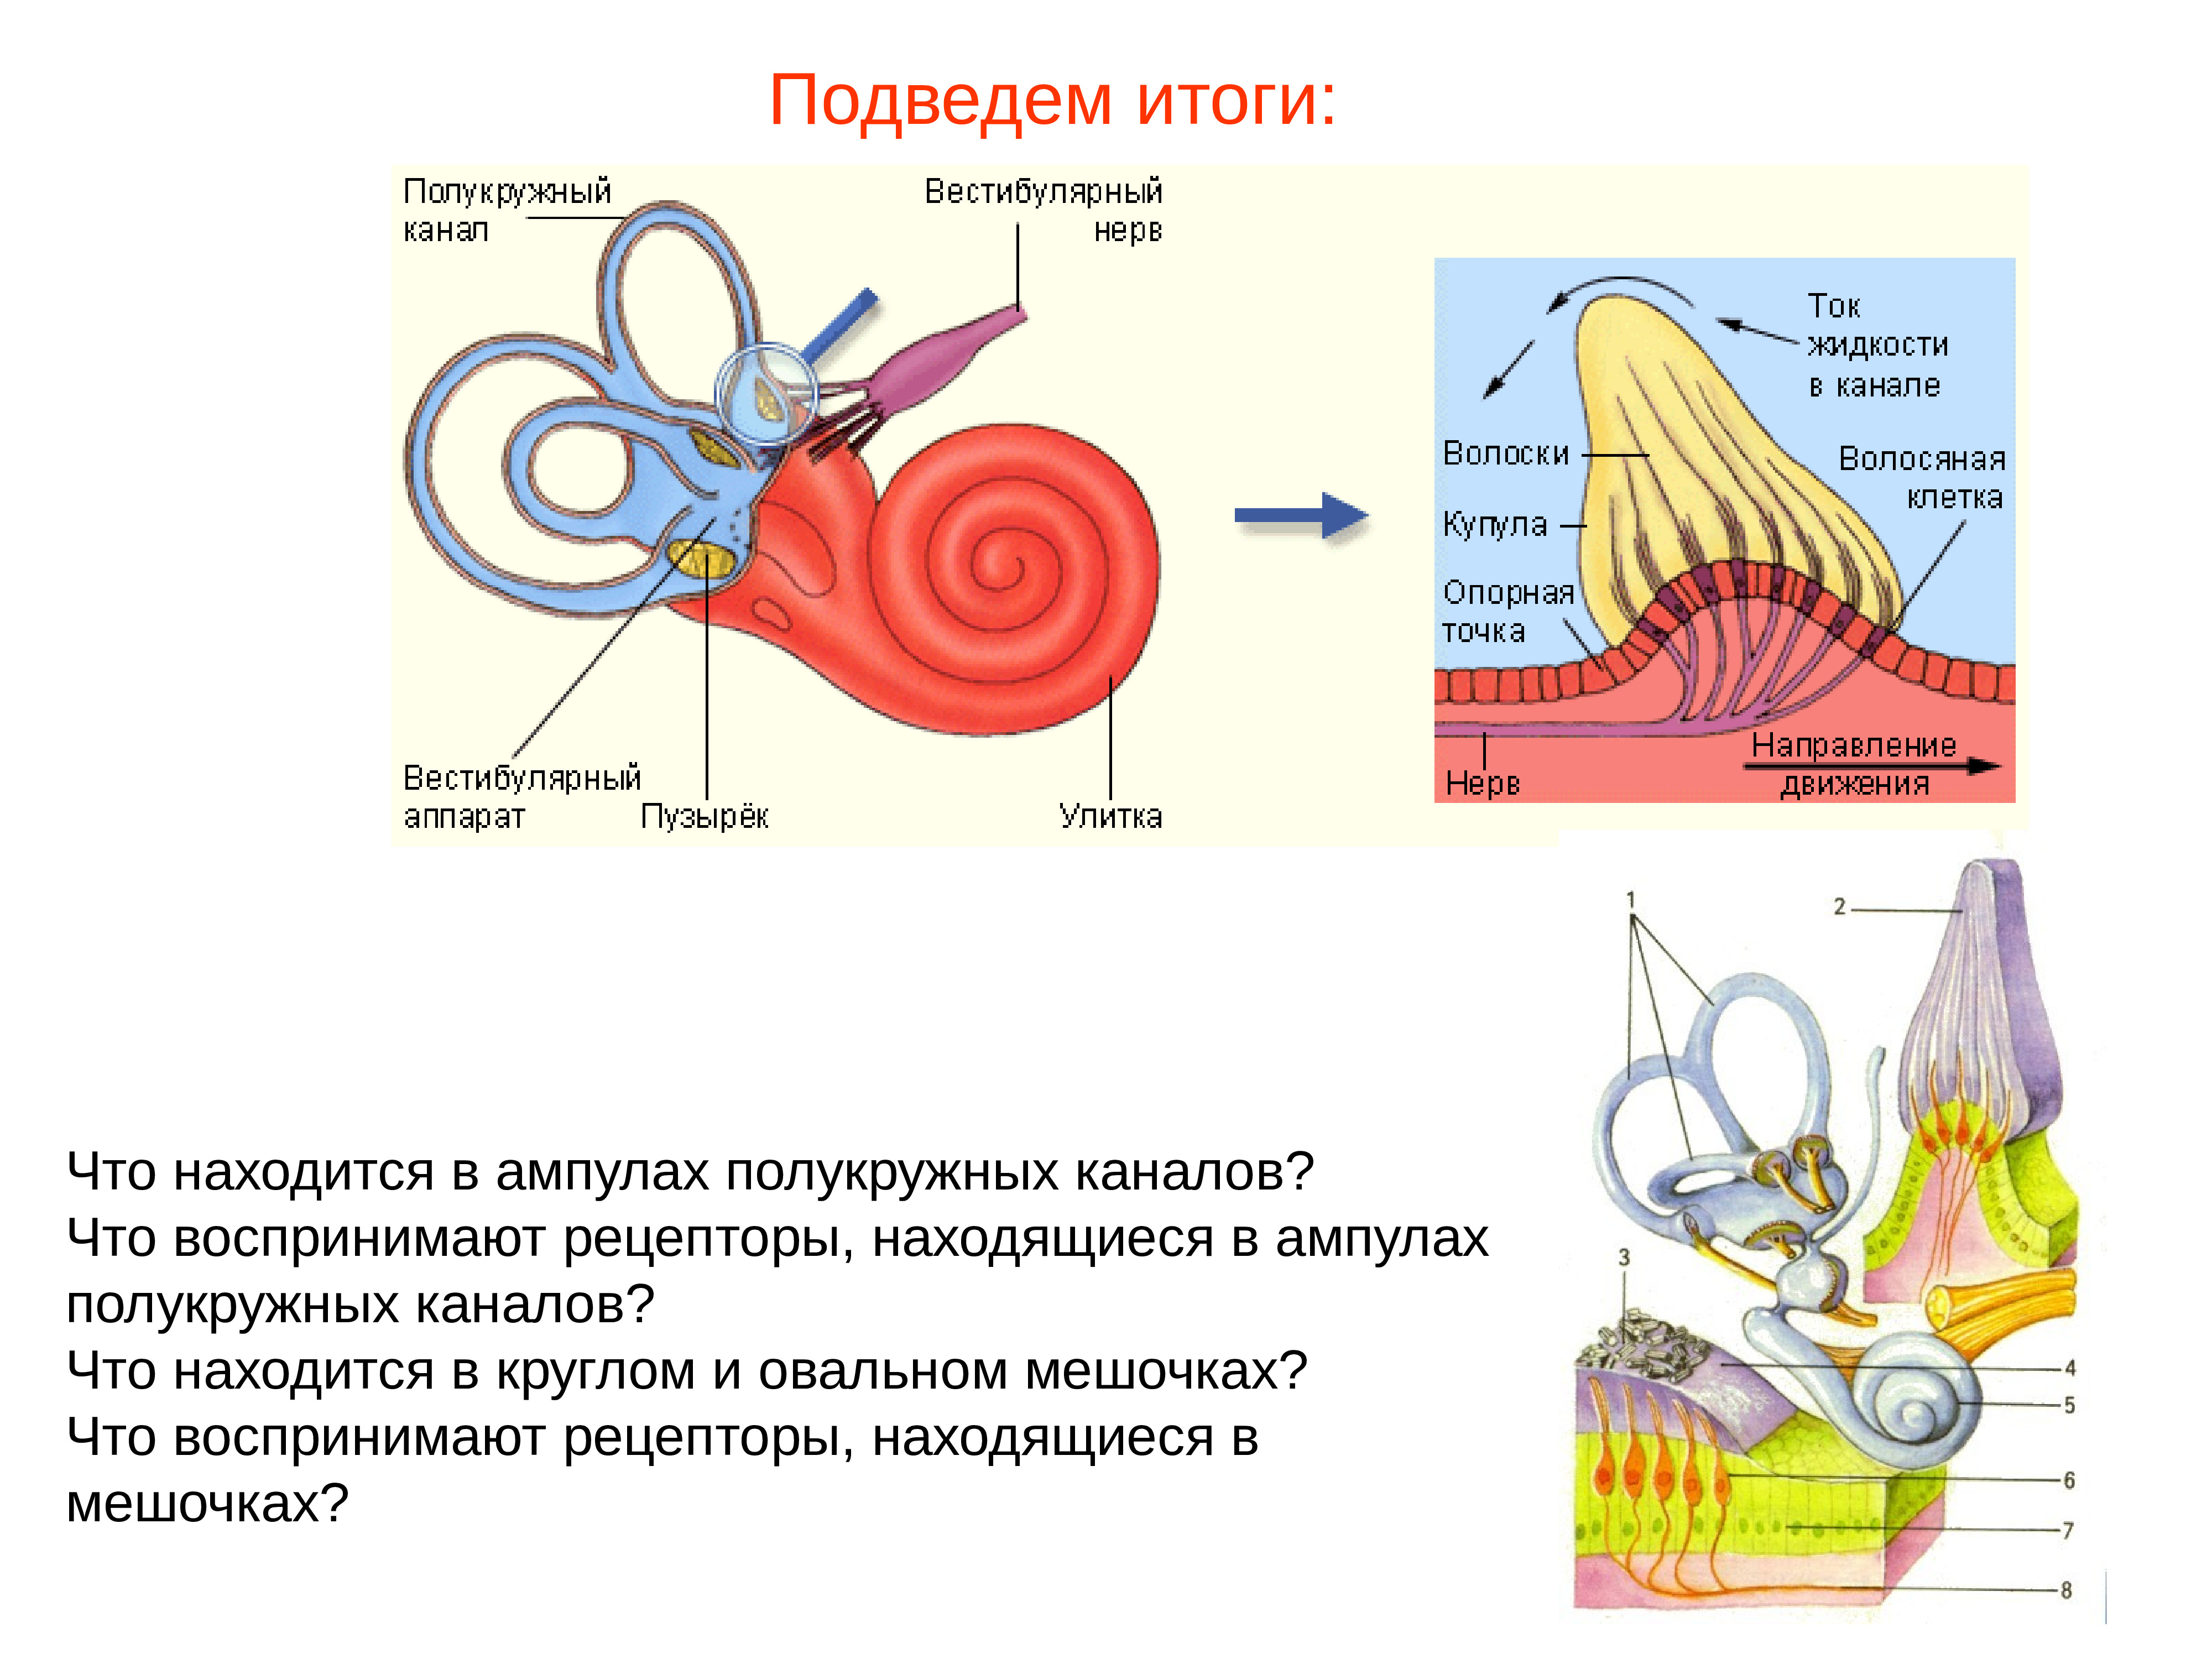 Рецепторный орган слуха. Рецепторы ампул полукружных каналов. Рецепторы внутреннего уха вестибулярного аппарата. Рецепторы вестибулярного анализатора. Рецепторы полукружных каналов реагируют на.